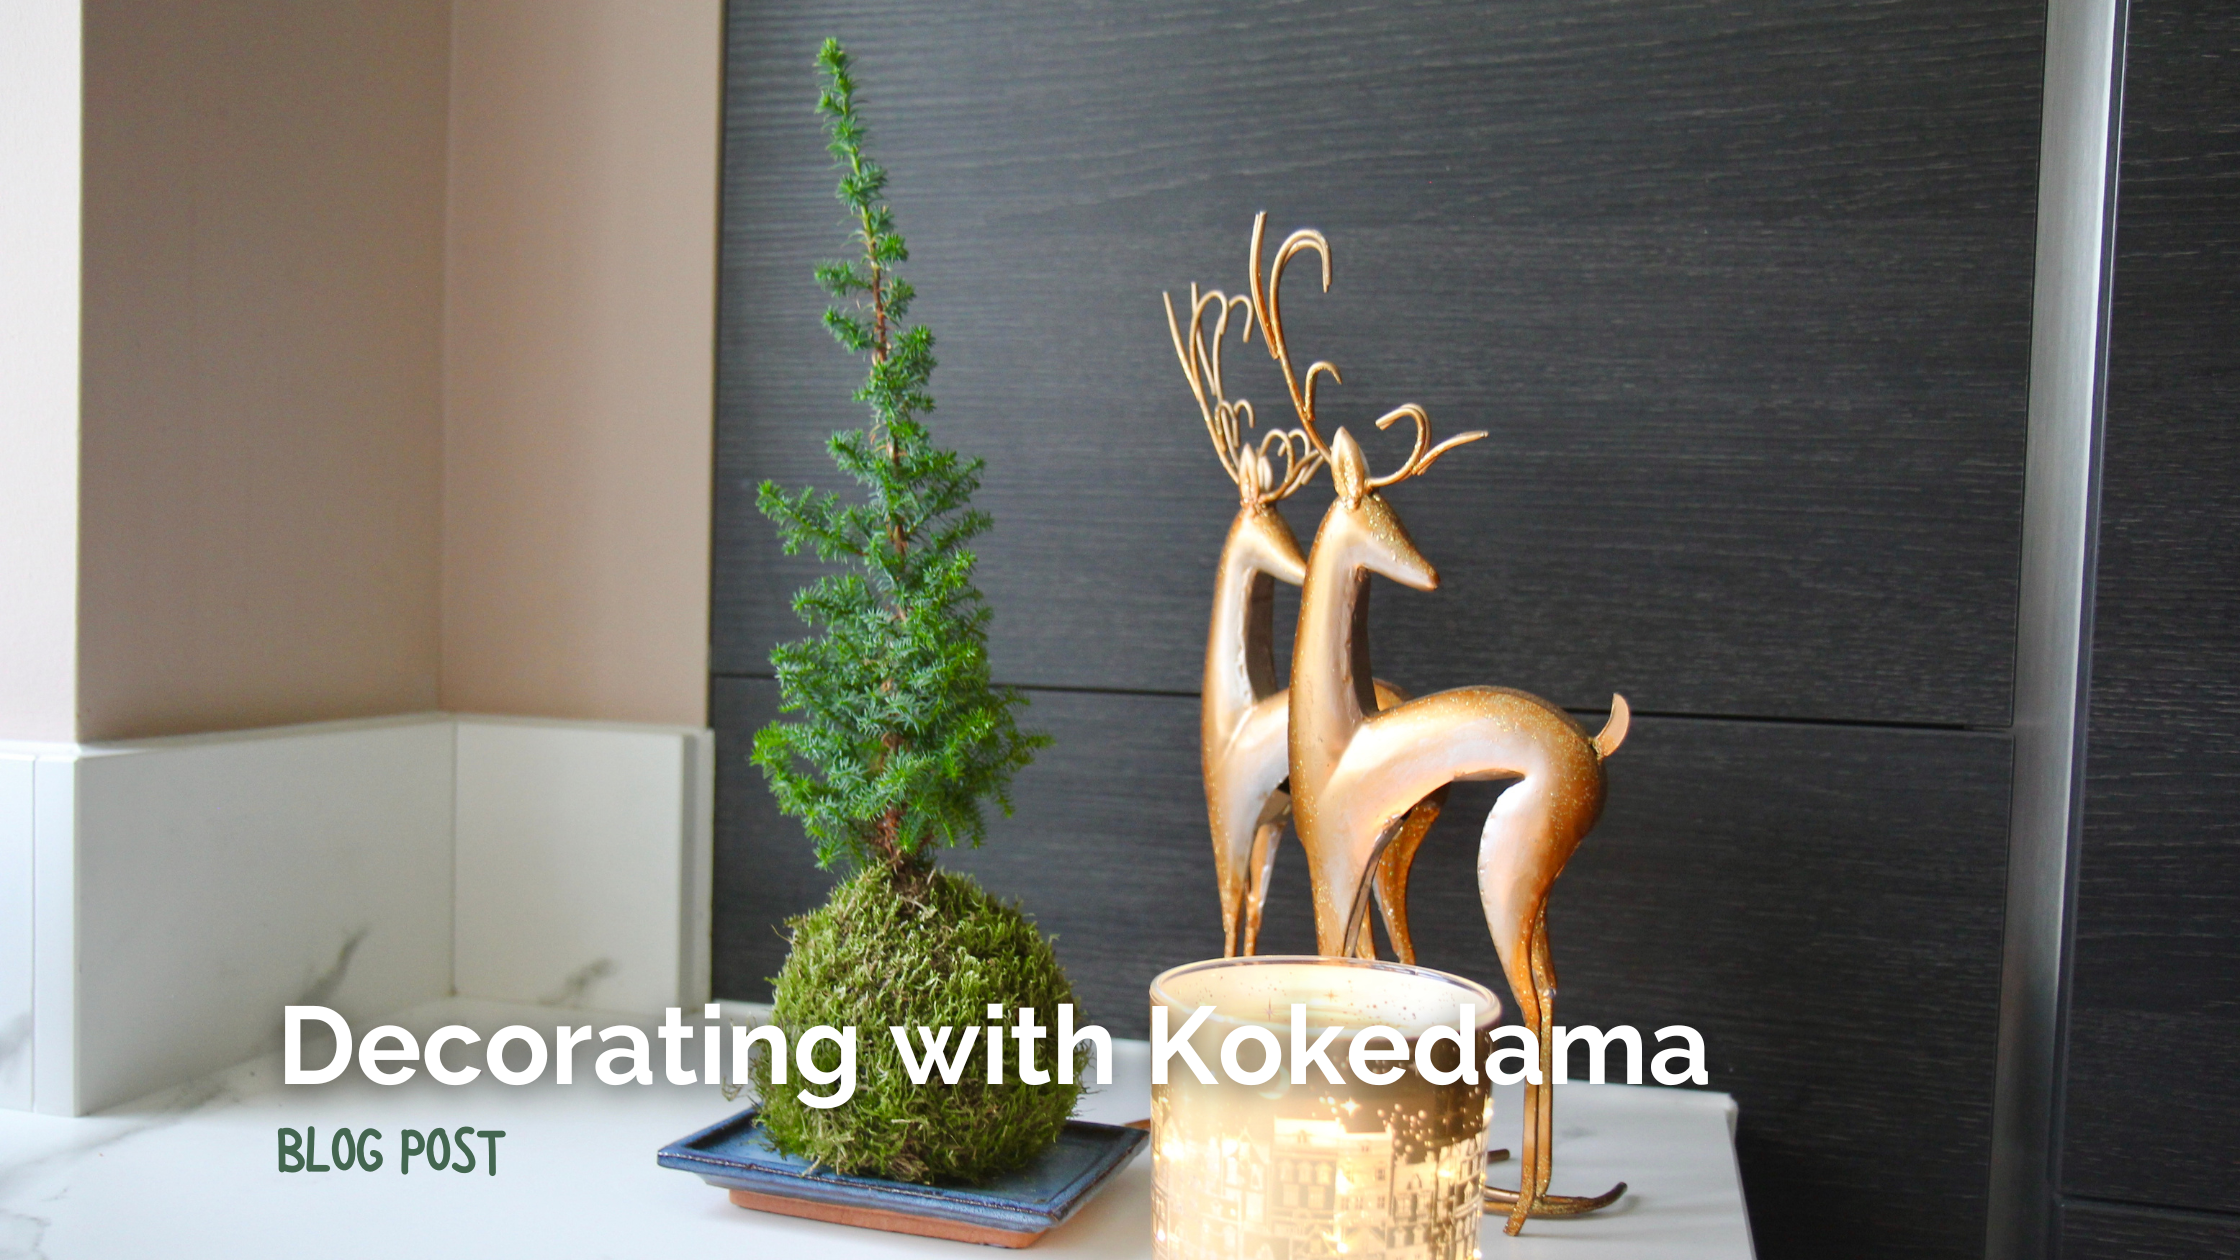 Decorating with Kokedama Plants this Christmas